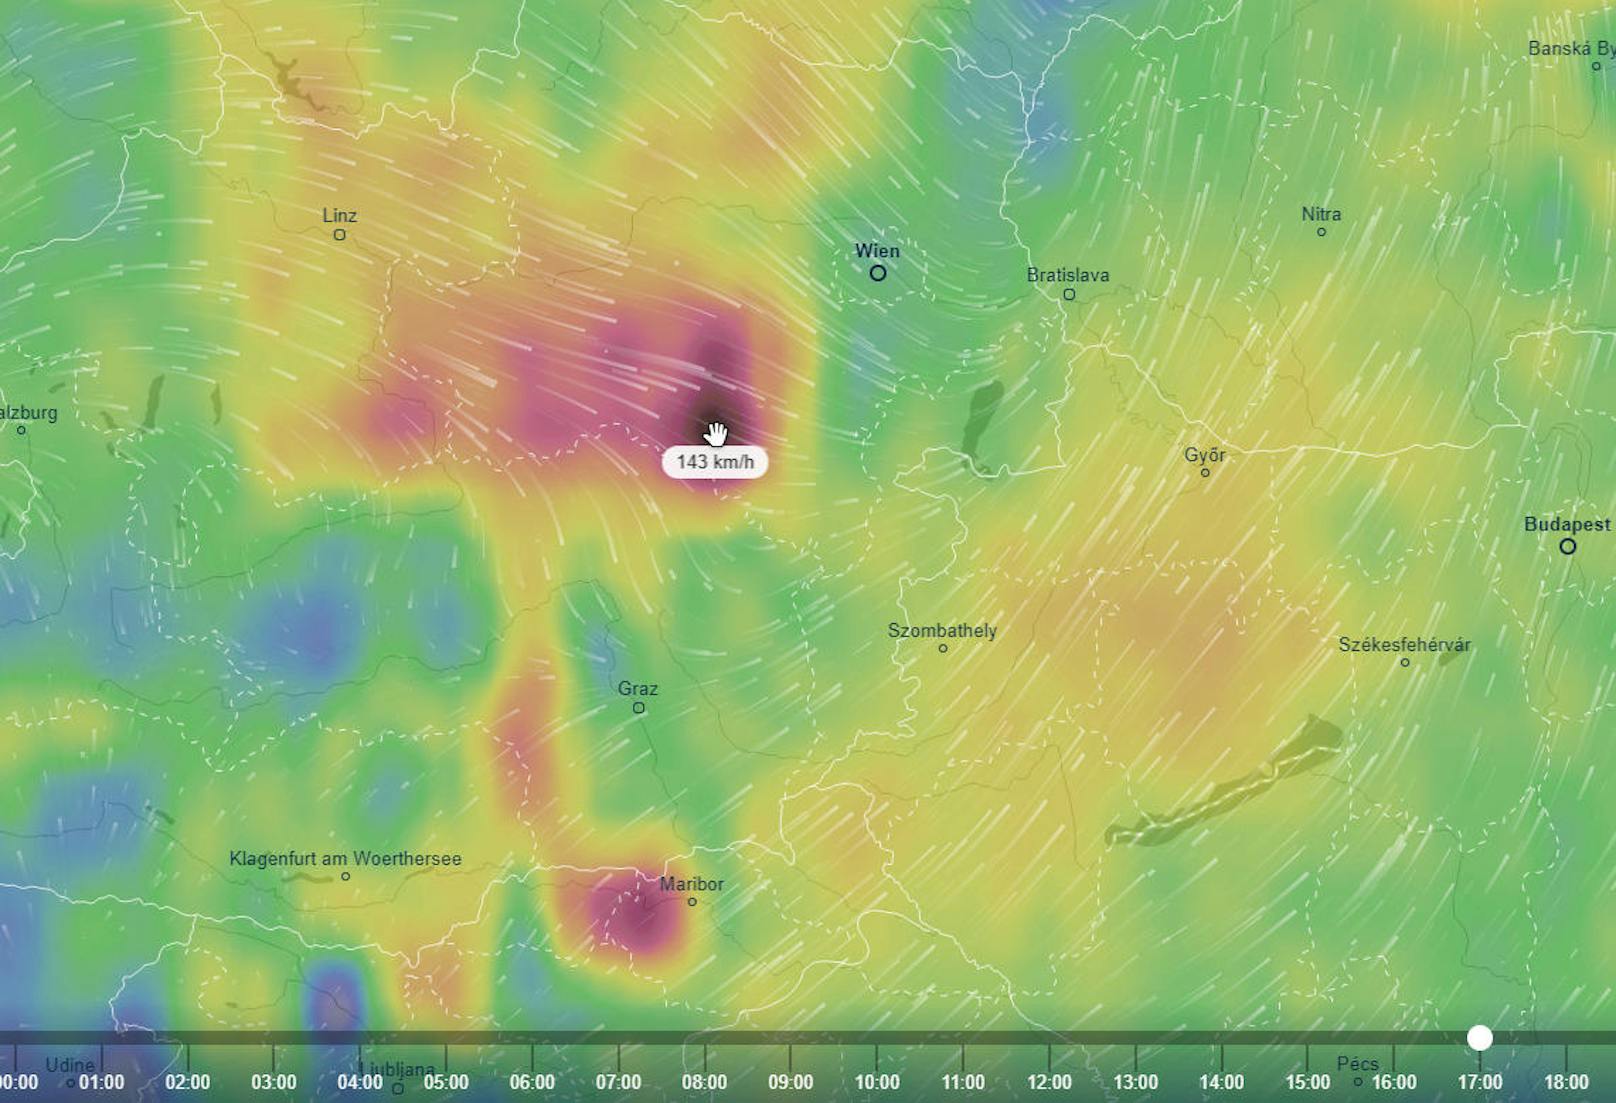 Wie hier zu sehen ist, sind gegen 17 Uhr Sturmböen von etwa 140 km/h zu erwarten. 

Quelle: Ventusky